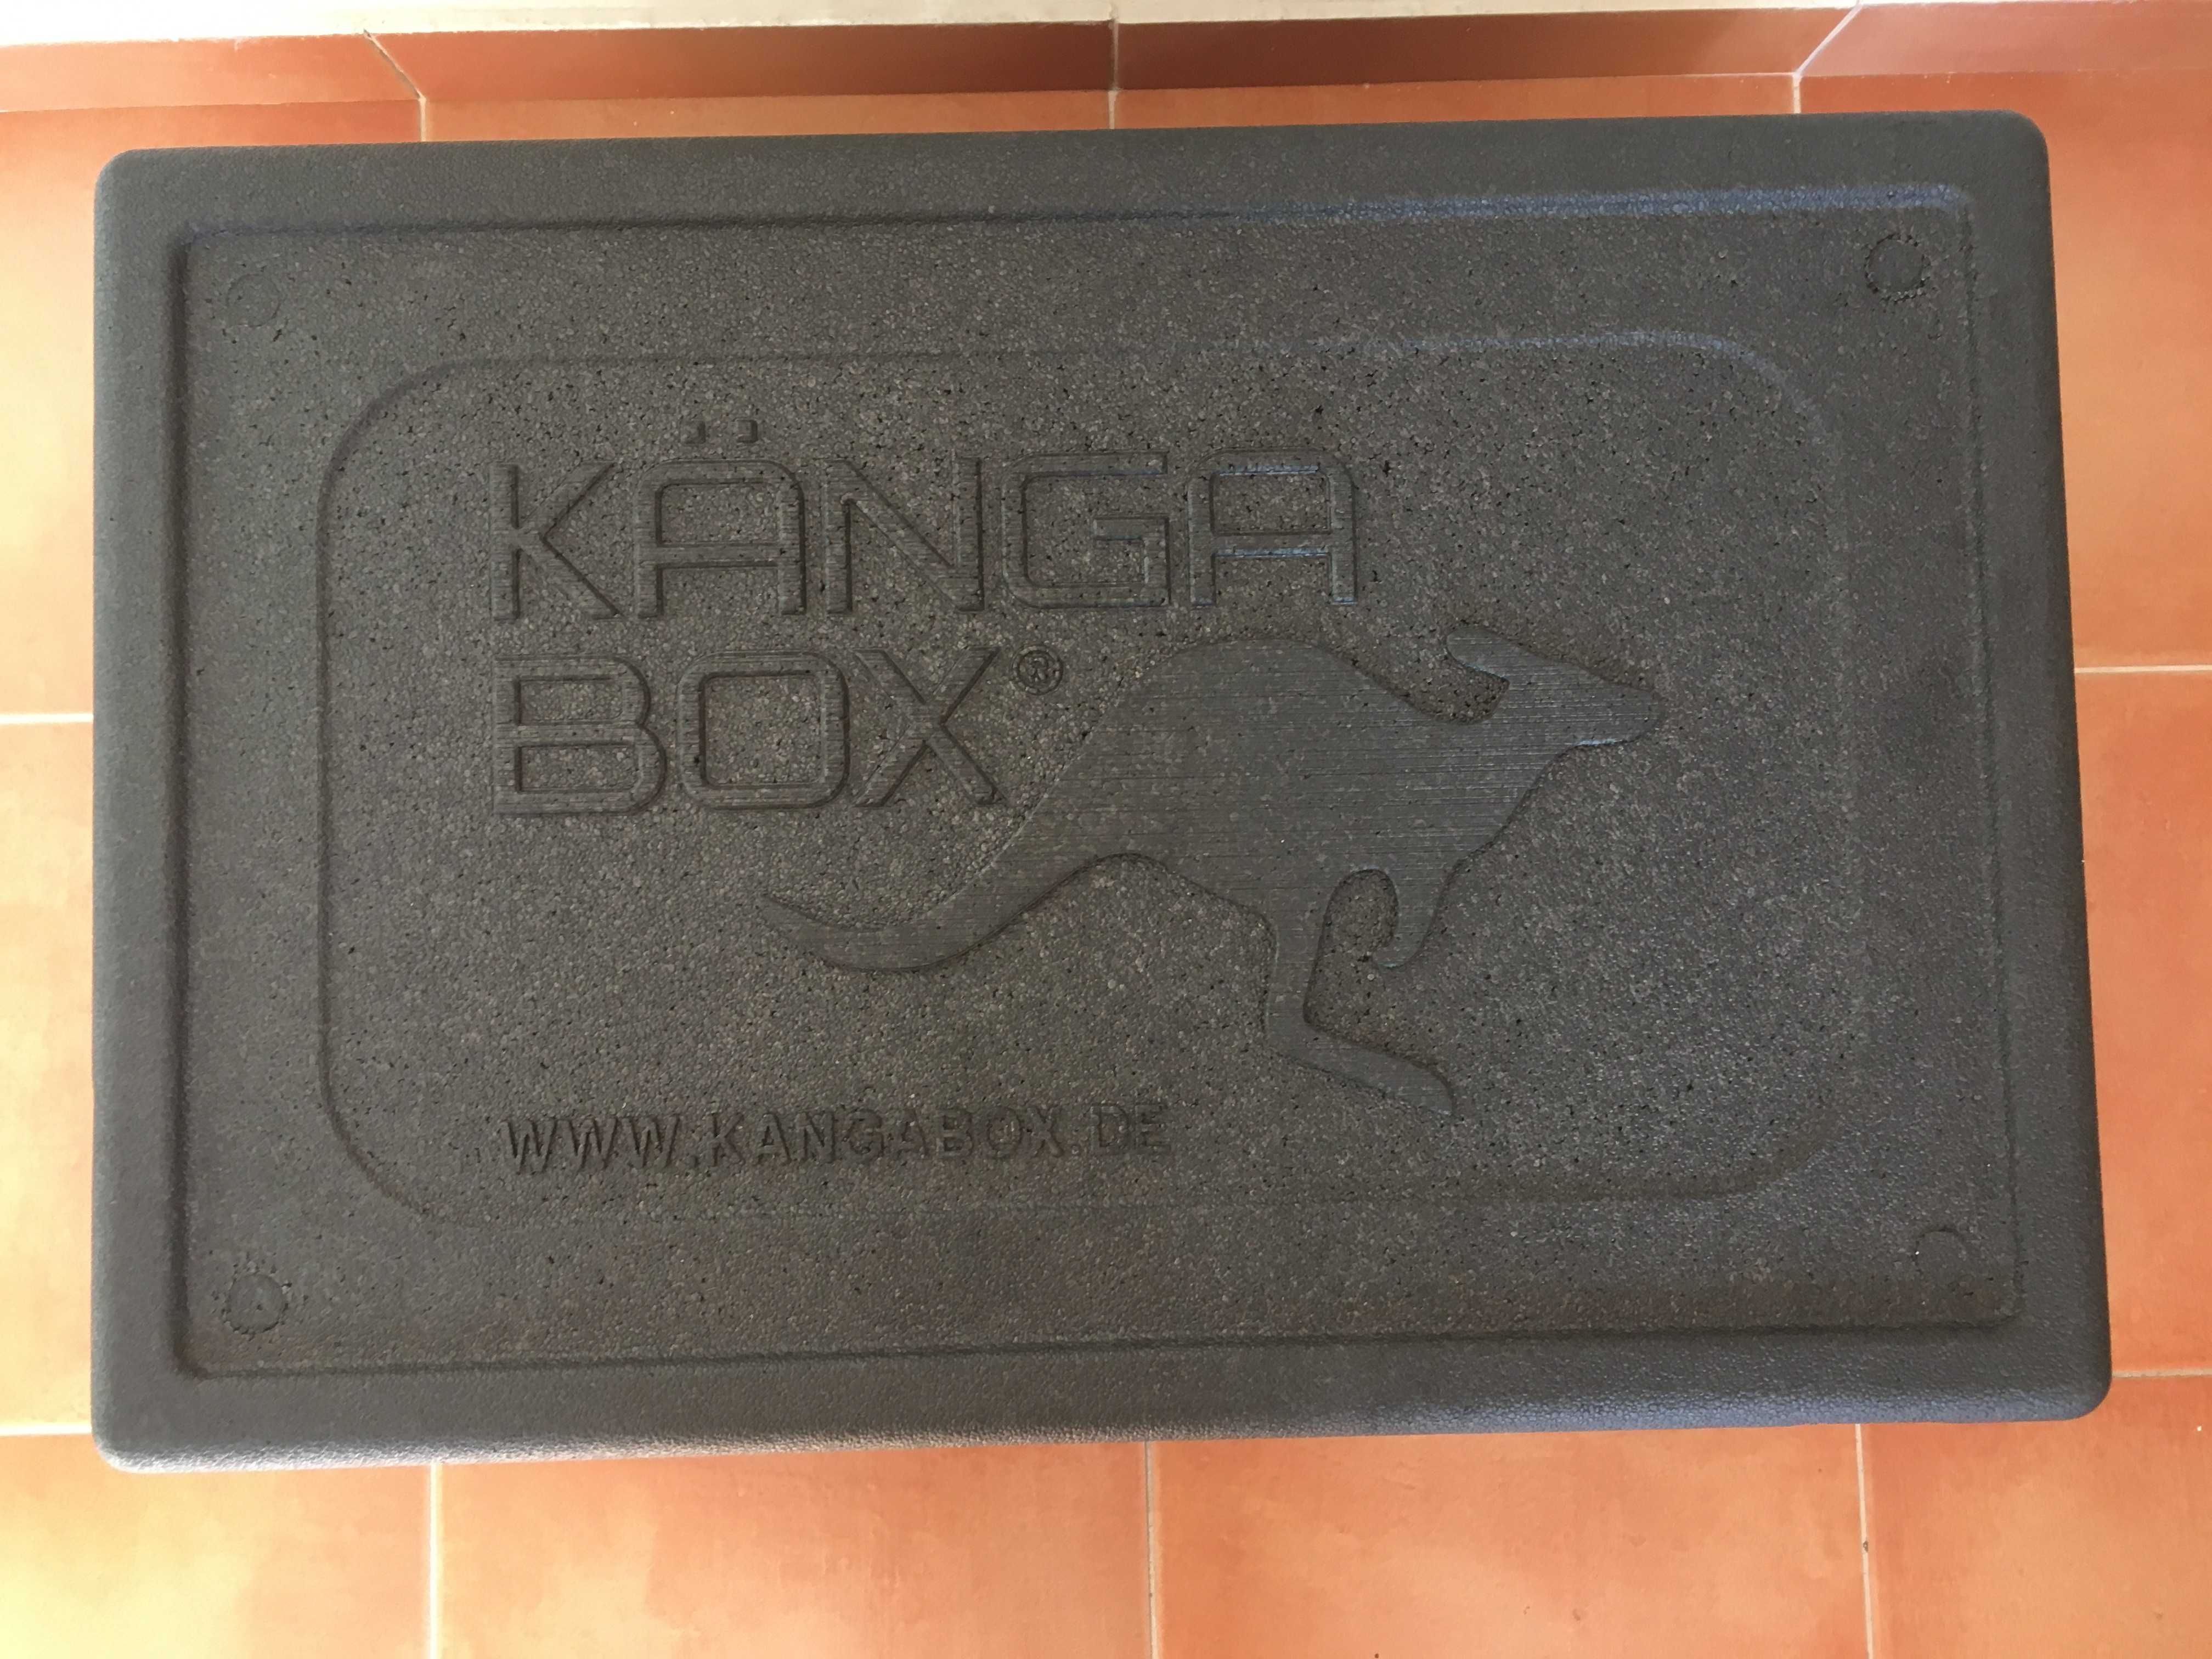 Caixa isotérmica KangaBox como nova